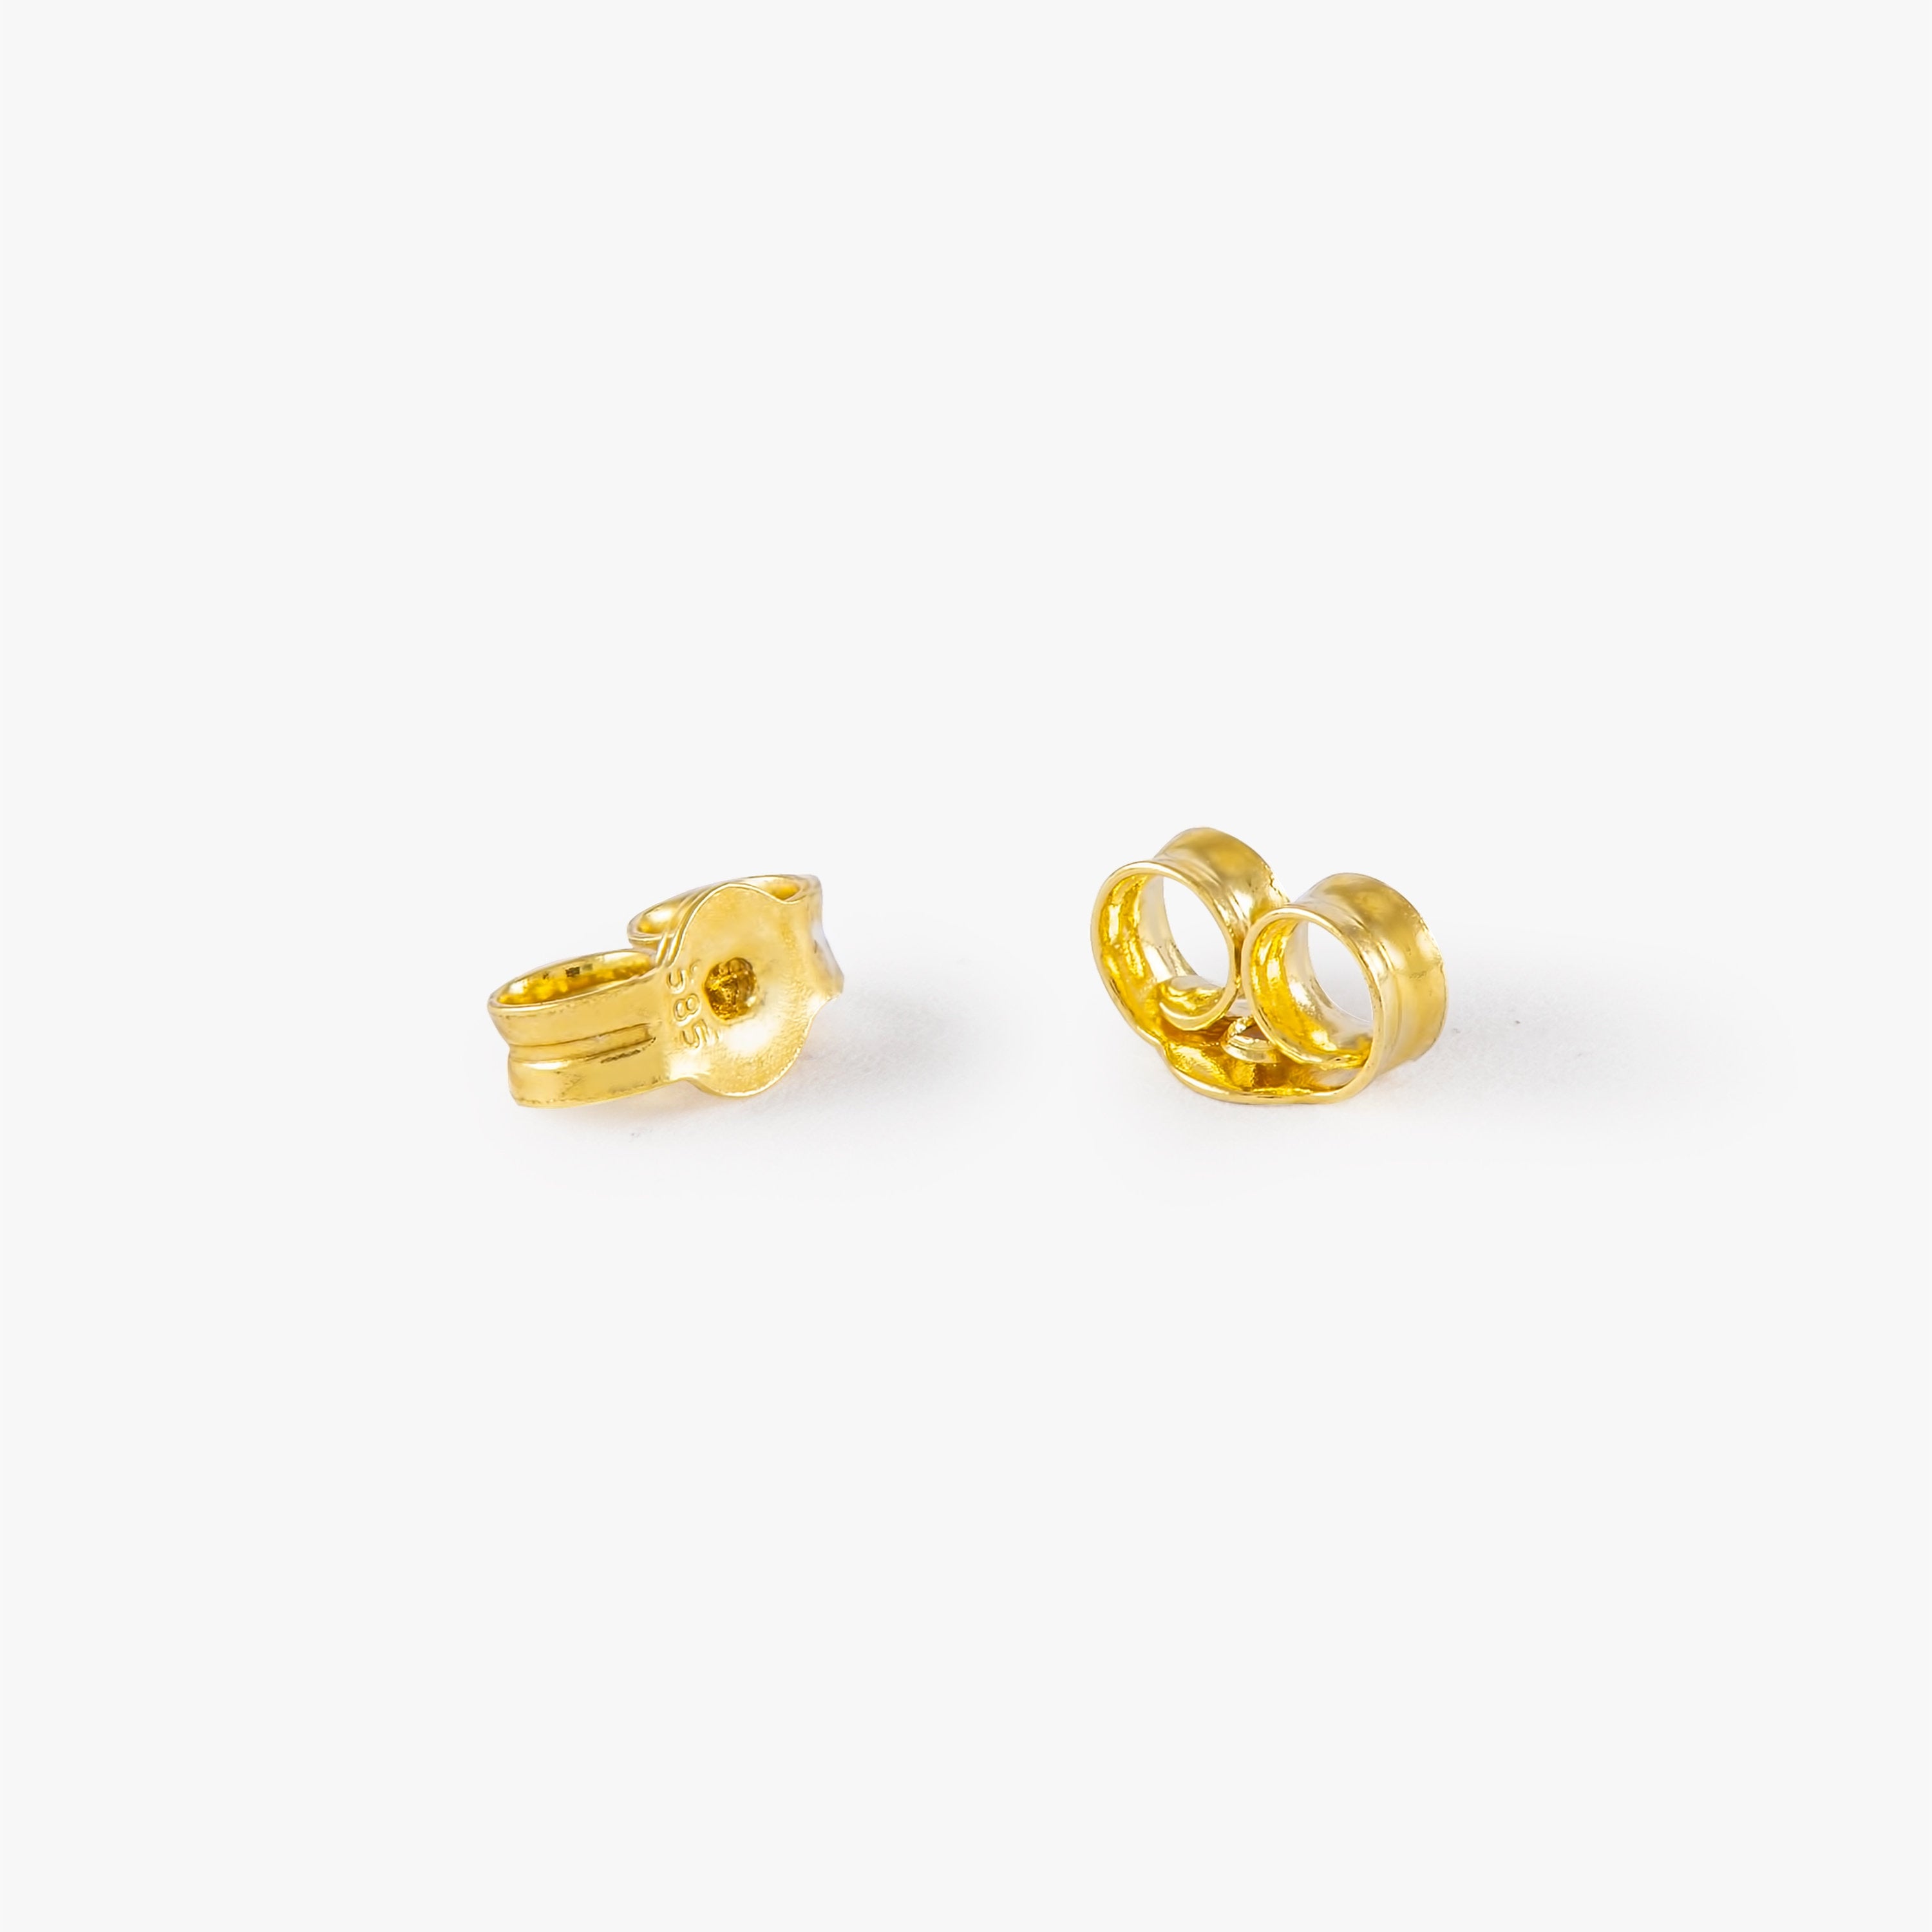 Paw Stud Earrings in 14K Gold